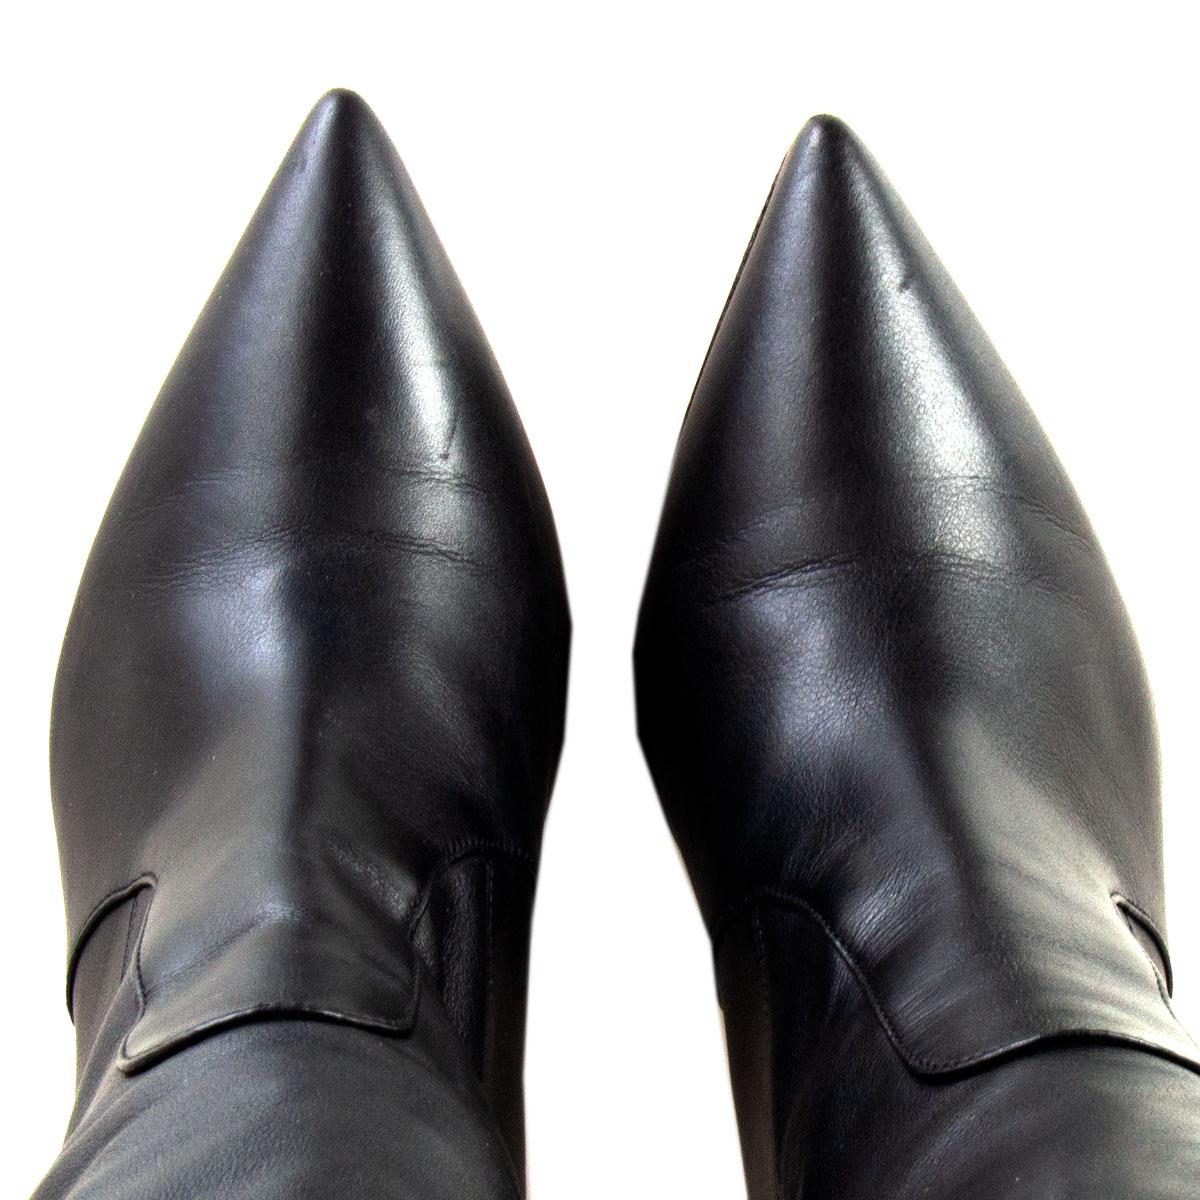 GIANVITO ROSSI schwarze kniehohe Lederstiefel mit spitzer Zehe, 38 Damen im Angebot